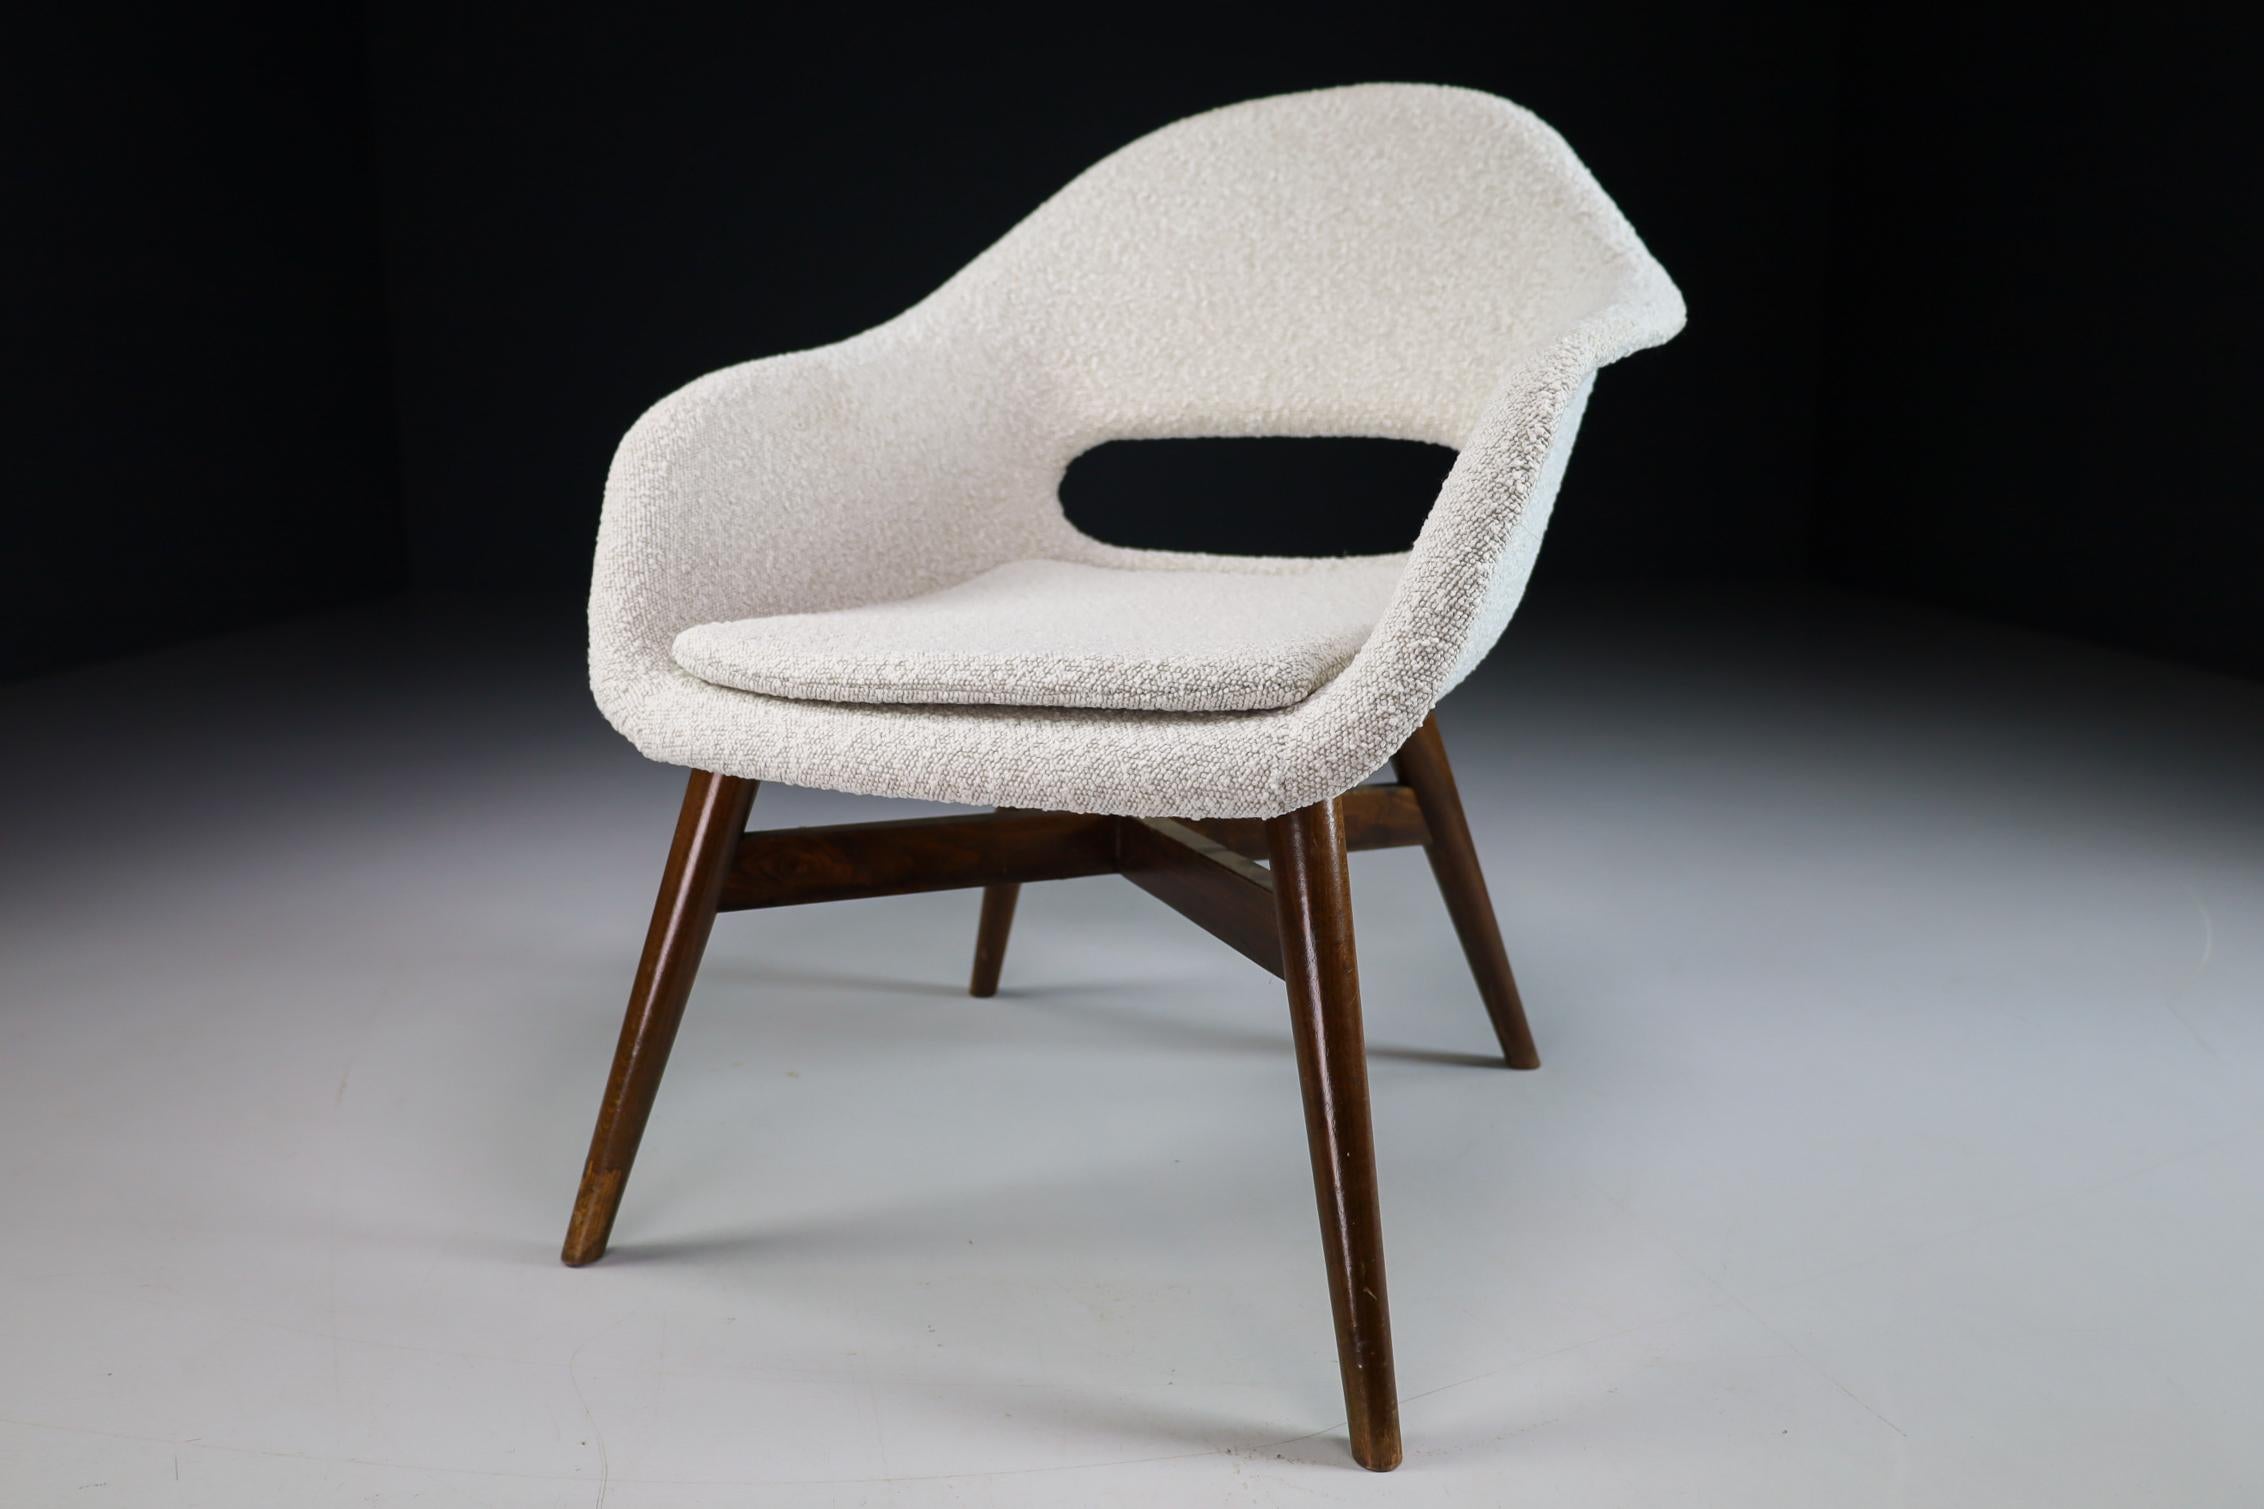 Chaise de salon Miroslav Navratil avec coque en fibre de verre dans un nouveau revêtement en tissu Bouclé. Le socle en bois, en hêtre ou en noyer teinté, est également en très bon état. Il a été fabriqué en République tchèque au début des années